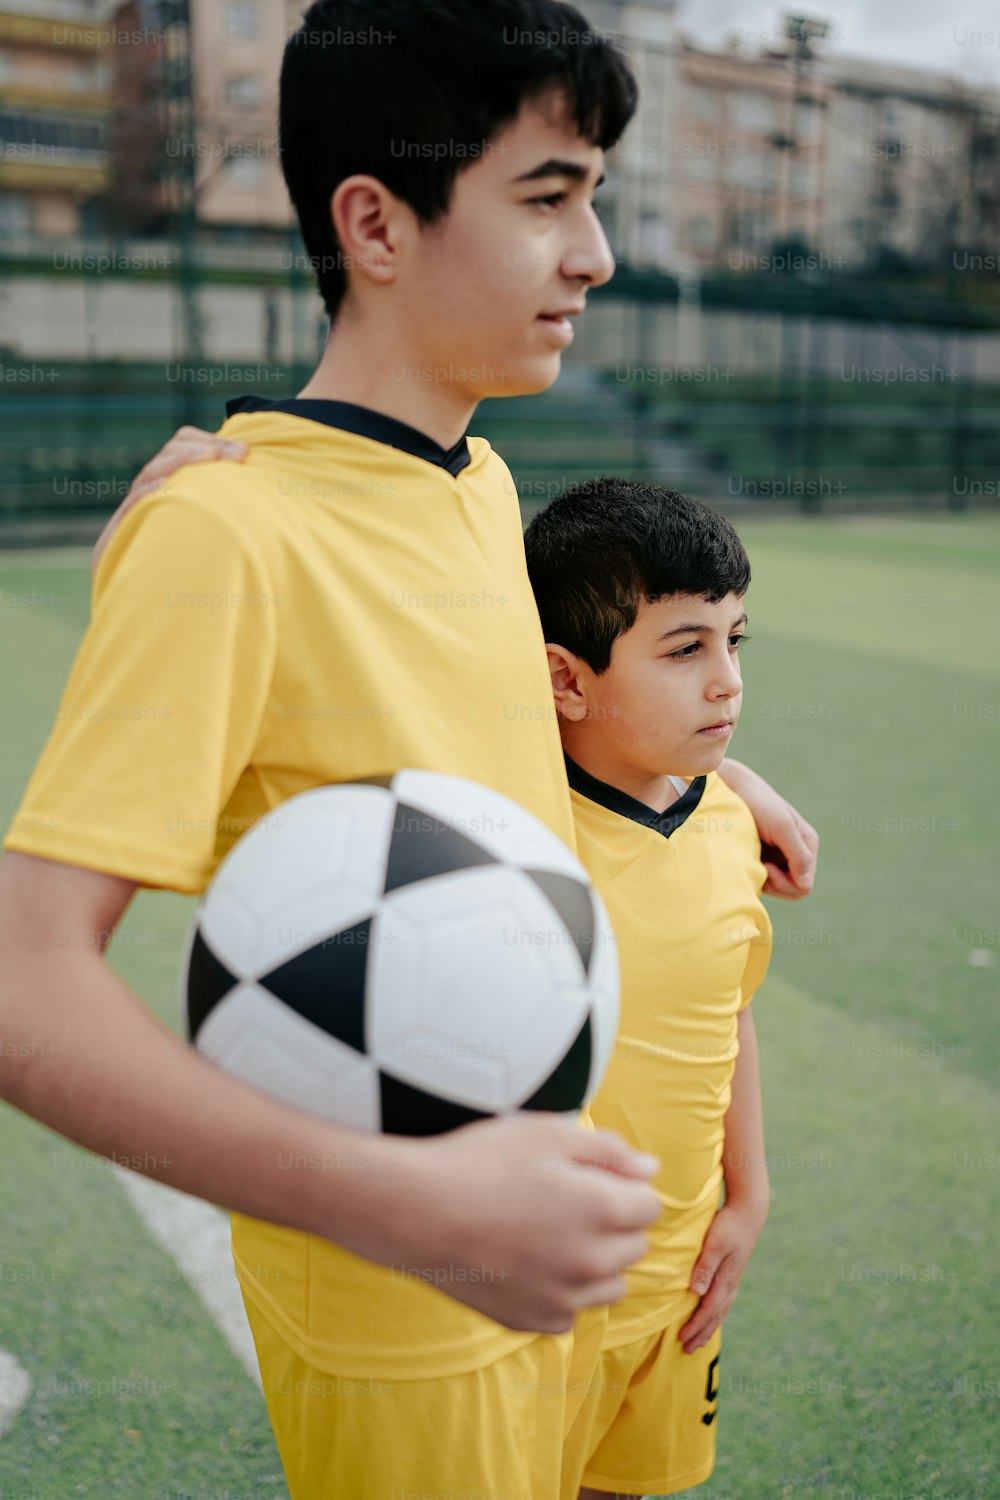 Zwei kleine Jungen, die nebeneinander stehen und einen Fußball halten